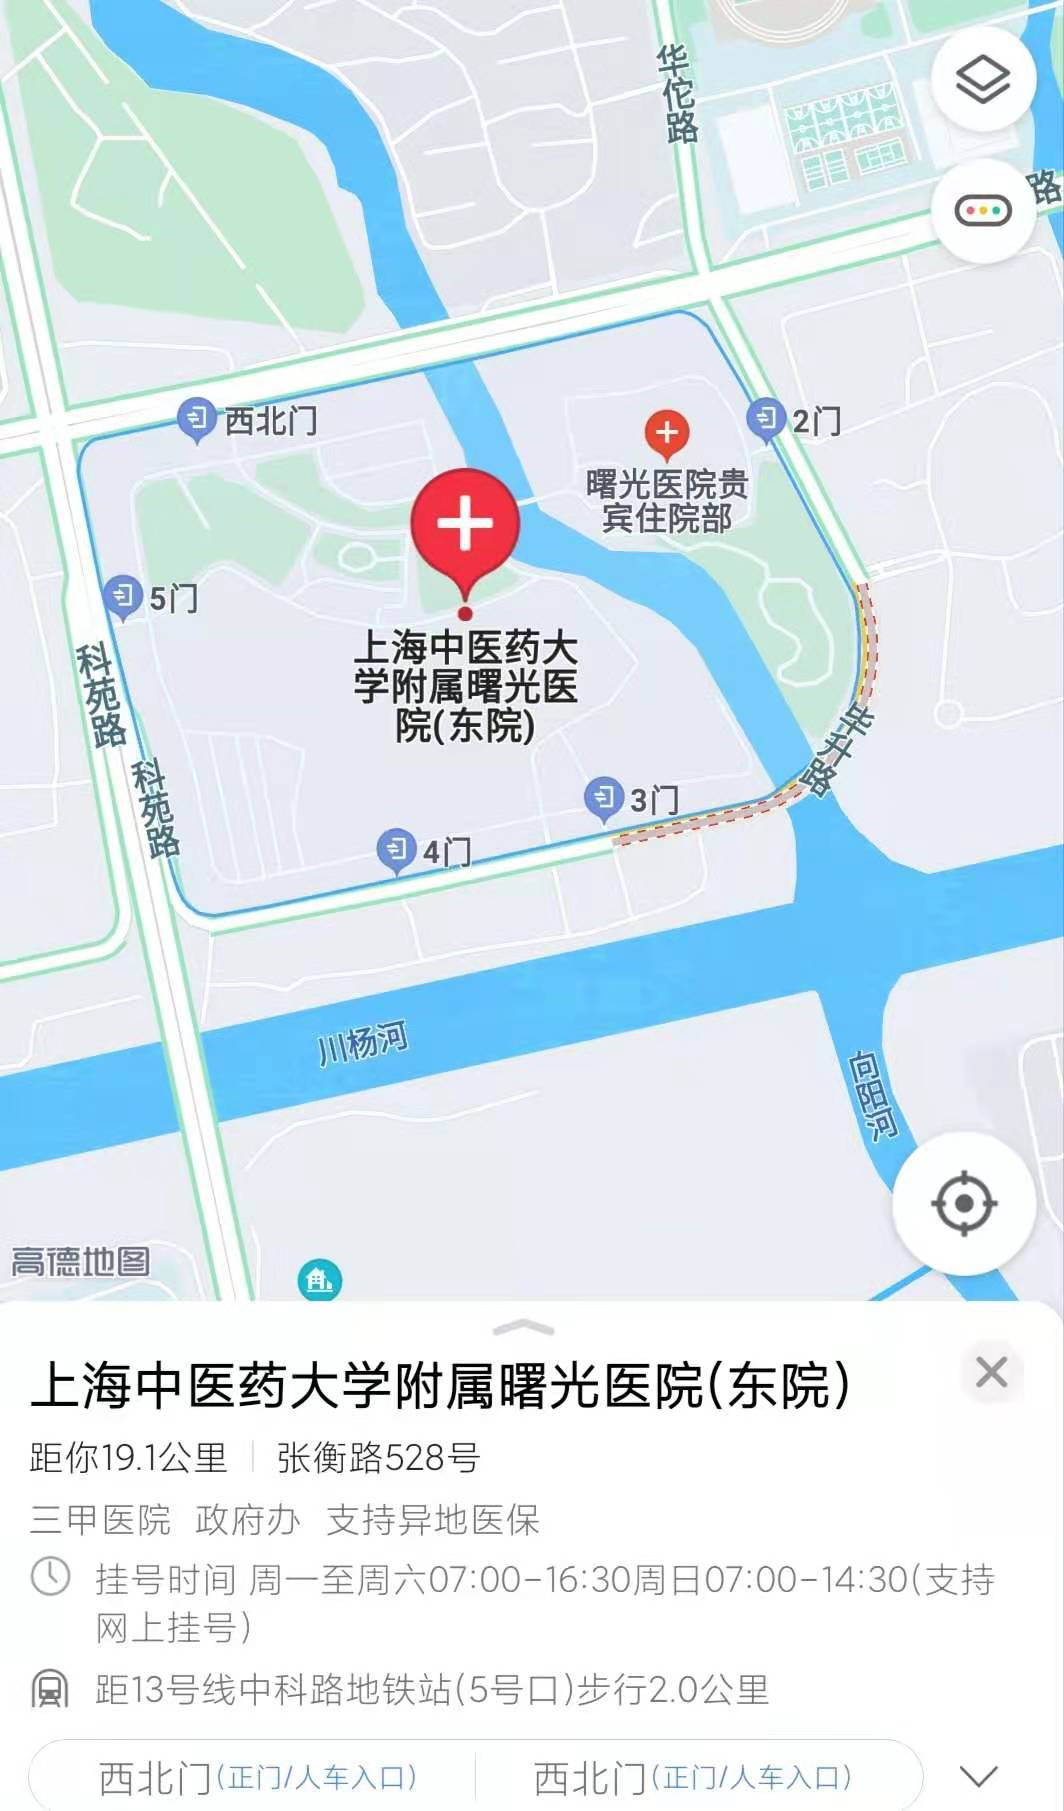 上海曙光医院西院体检中心体检项目预约_体检套餐多少钱-微检网